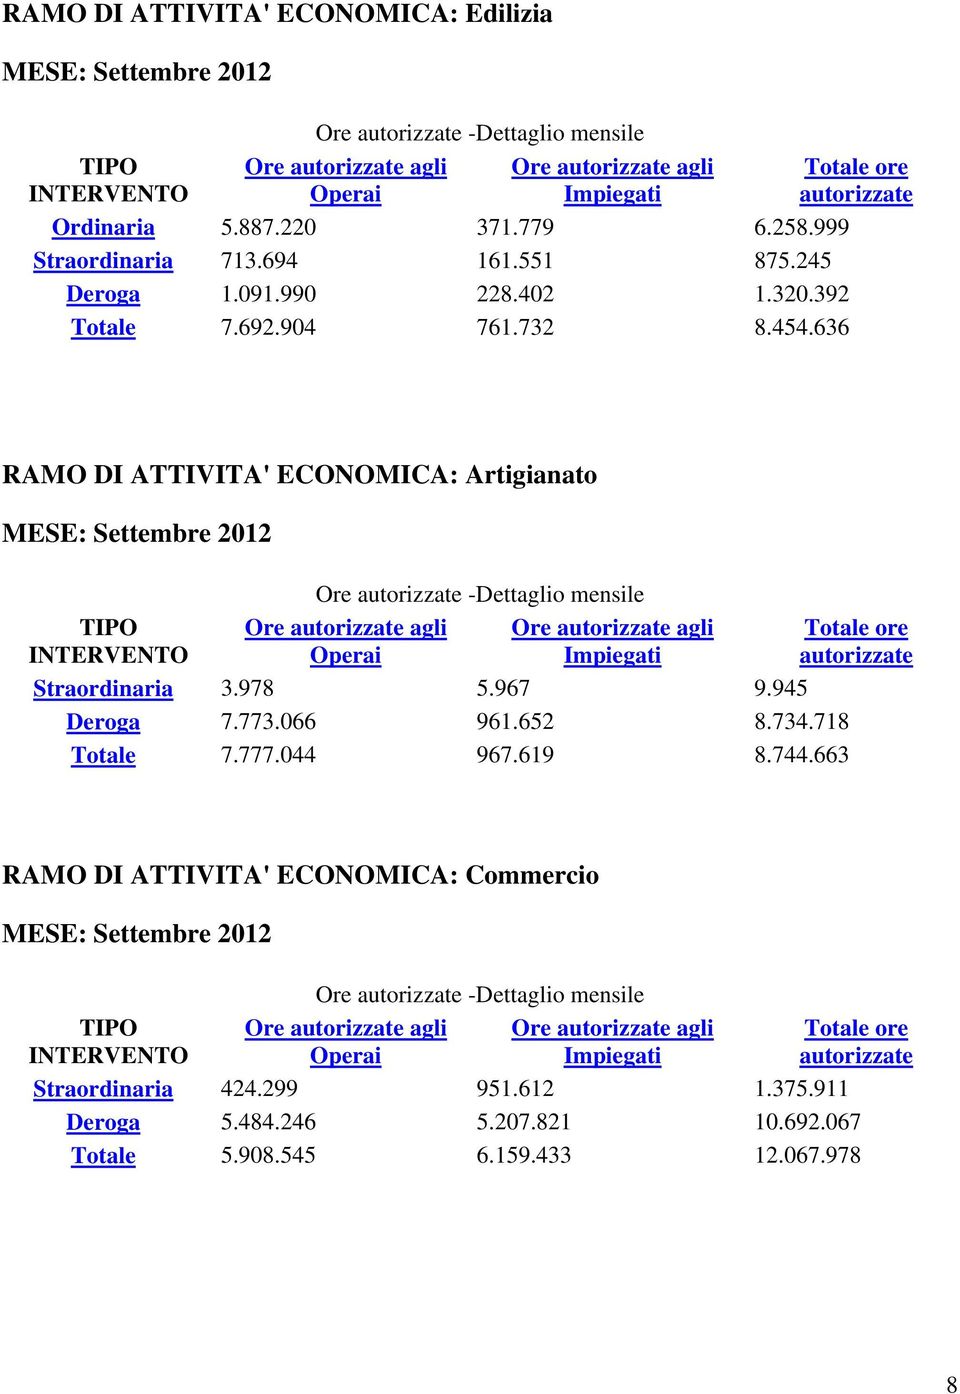 636 RAMO DI ATTIVITA' ECONOMICA: Artigianato MESE: Settembre 2012 Ore -Dettaglio mensile Straordinaria 3.978 5.967 9.945 Deroga 7.773.066 961.652 8.734.